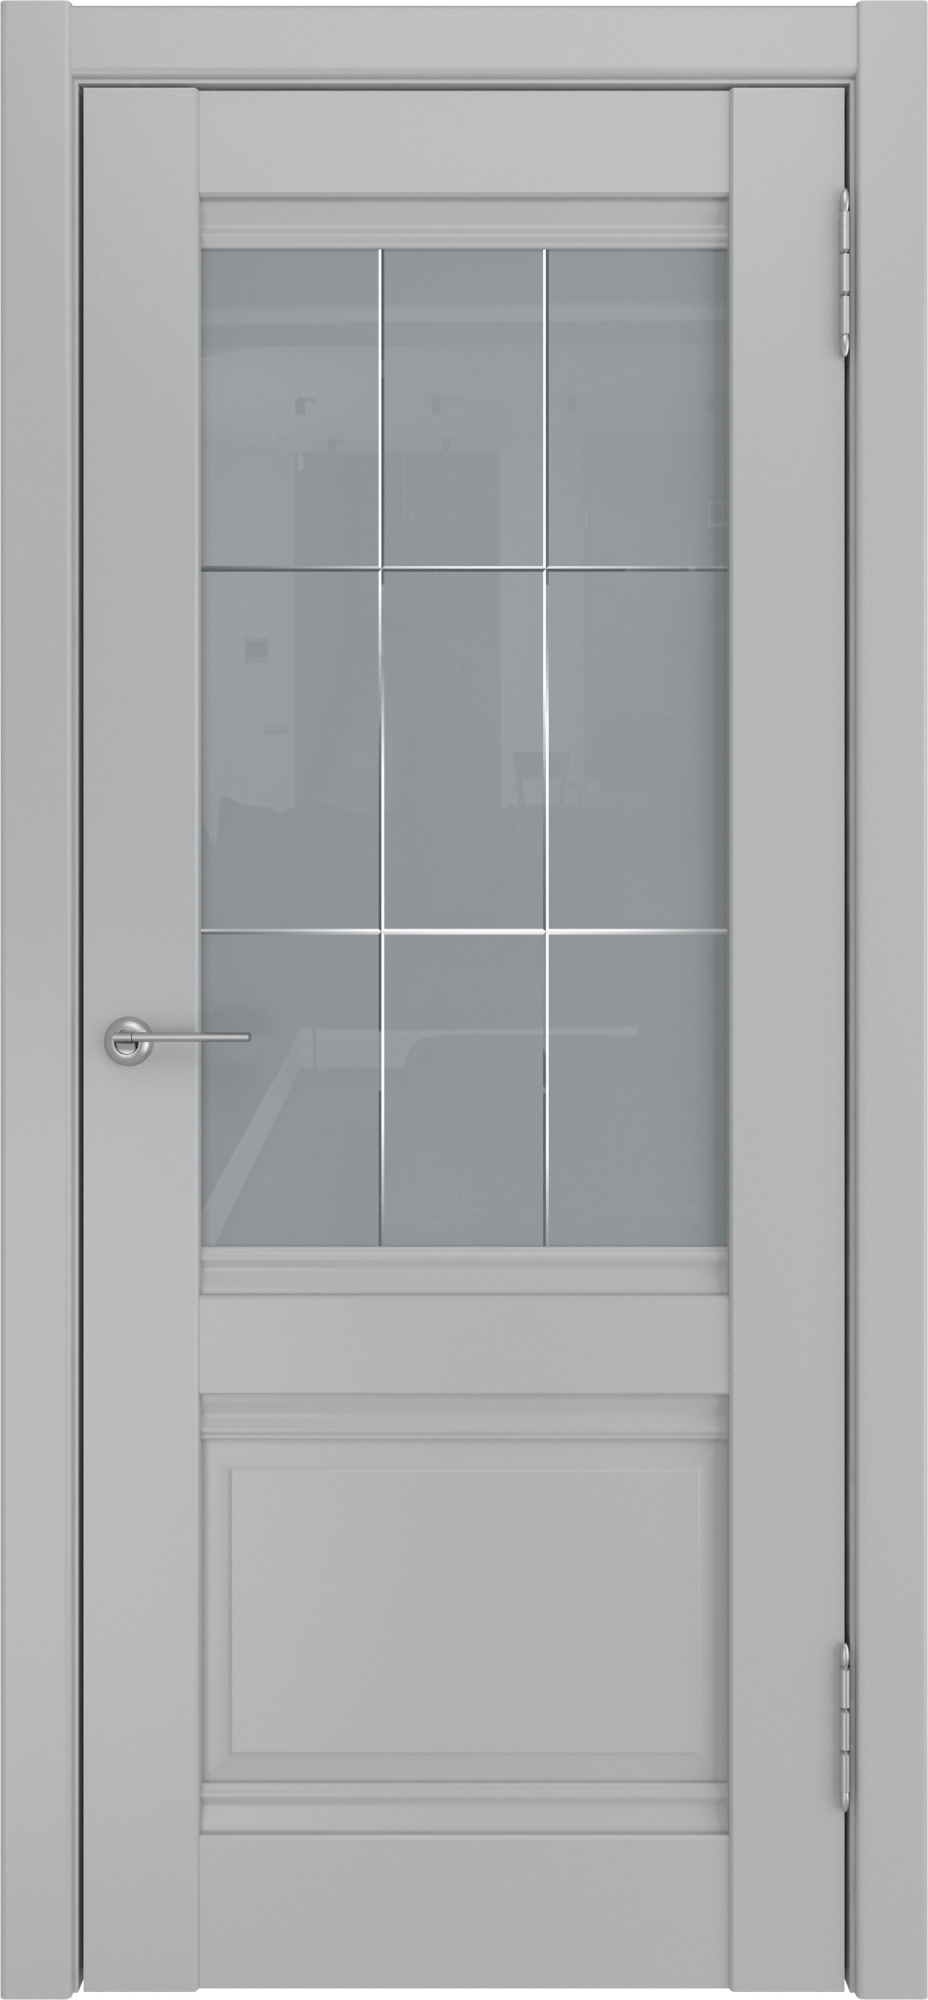 Фото Межкомнатная дверь U-52 (винил, маус, стекло, 900x2000)